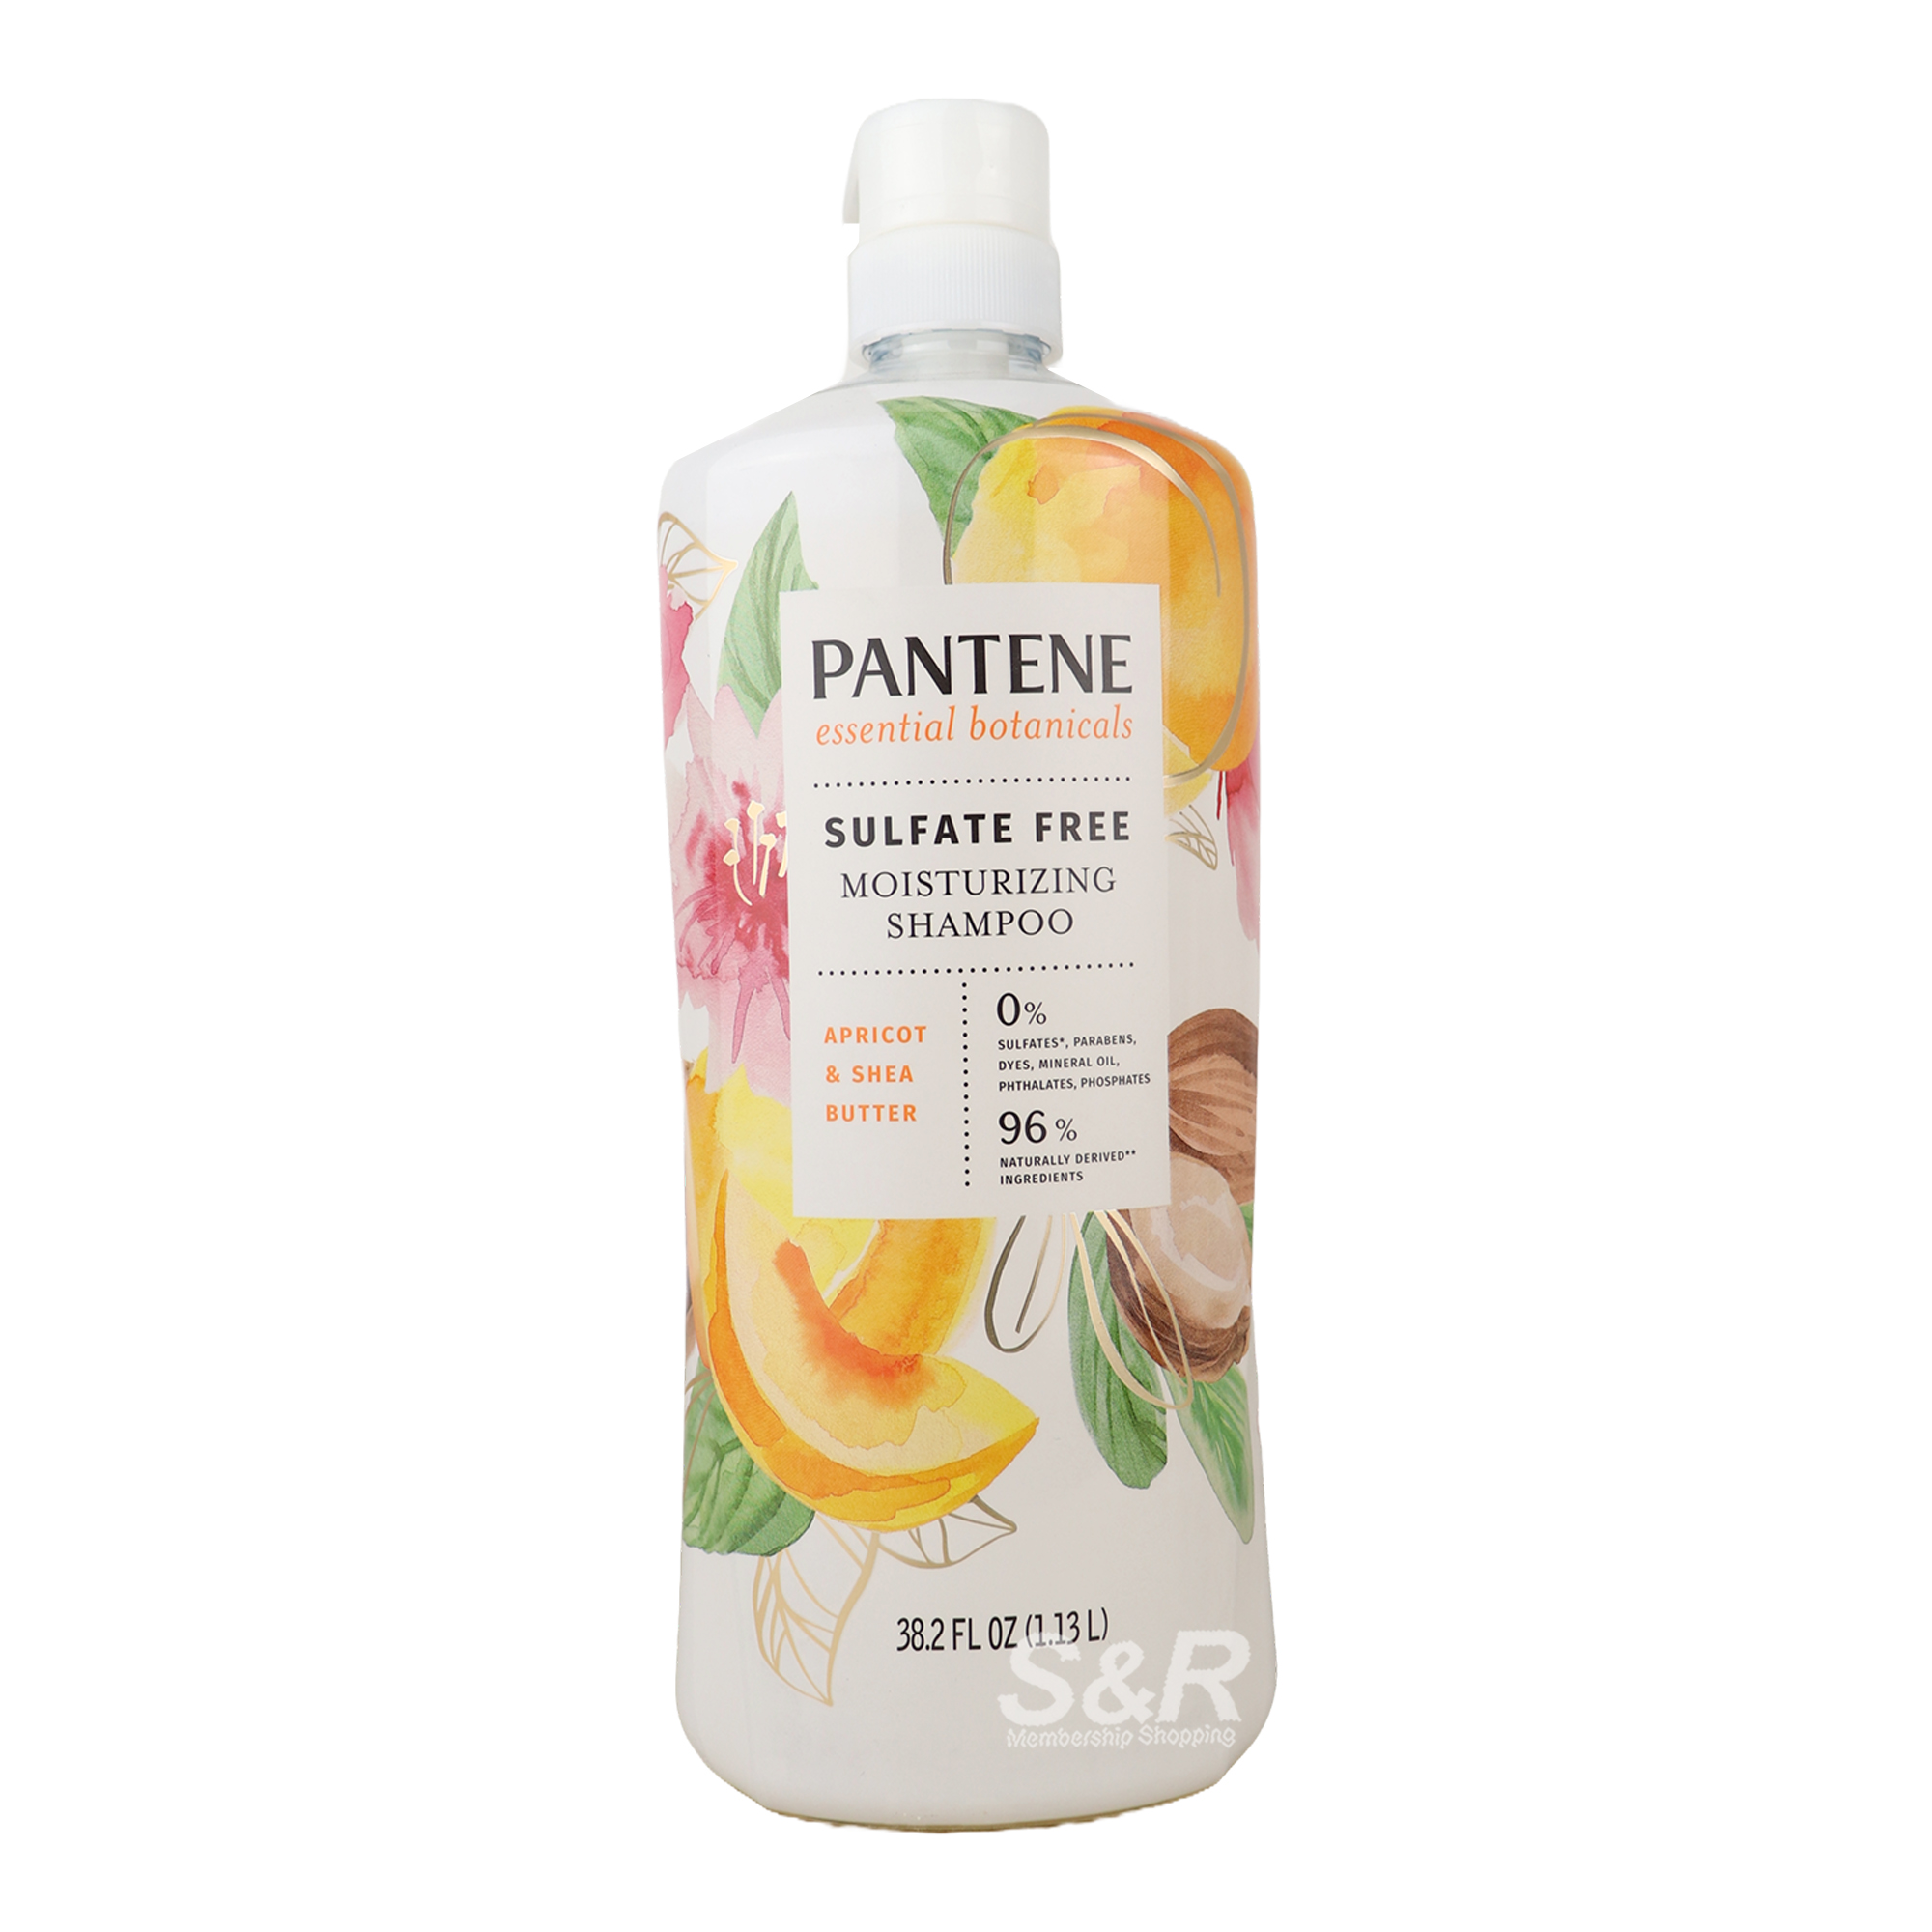 Pantene Sulfate Free Moisturizing Shampoo 1.13L